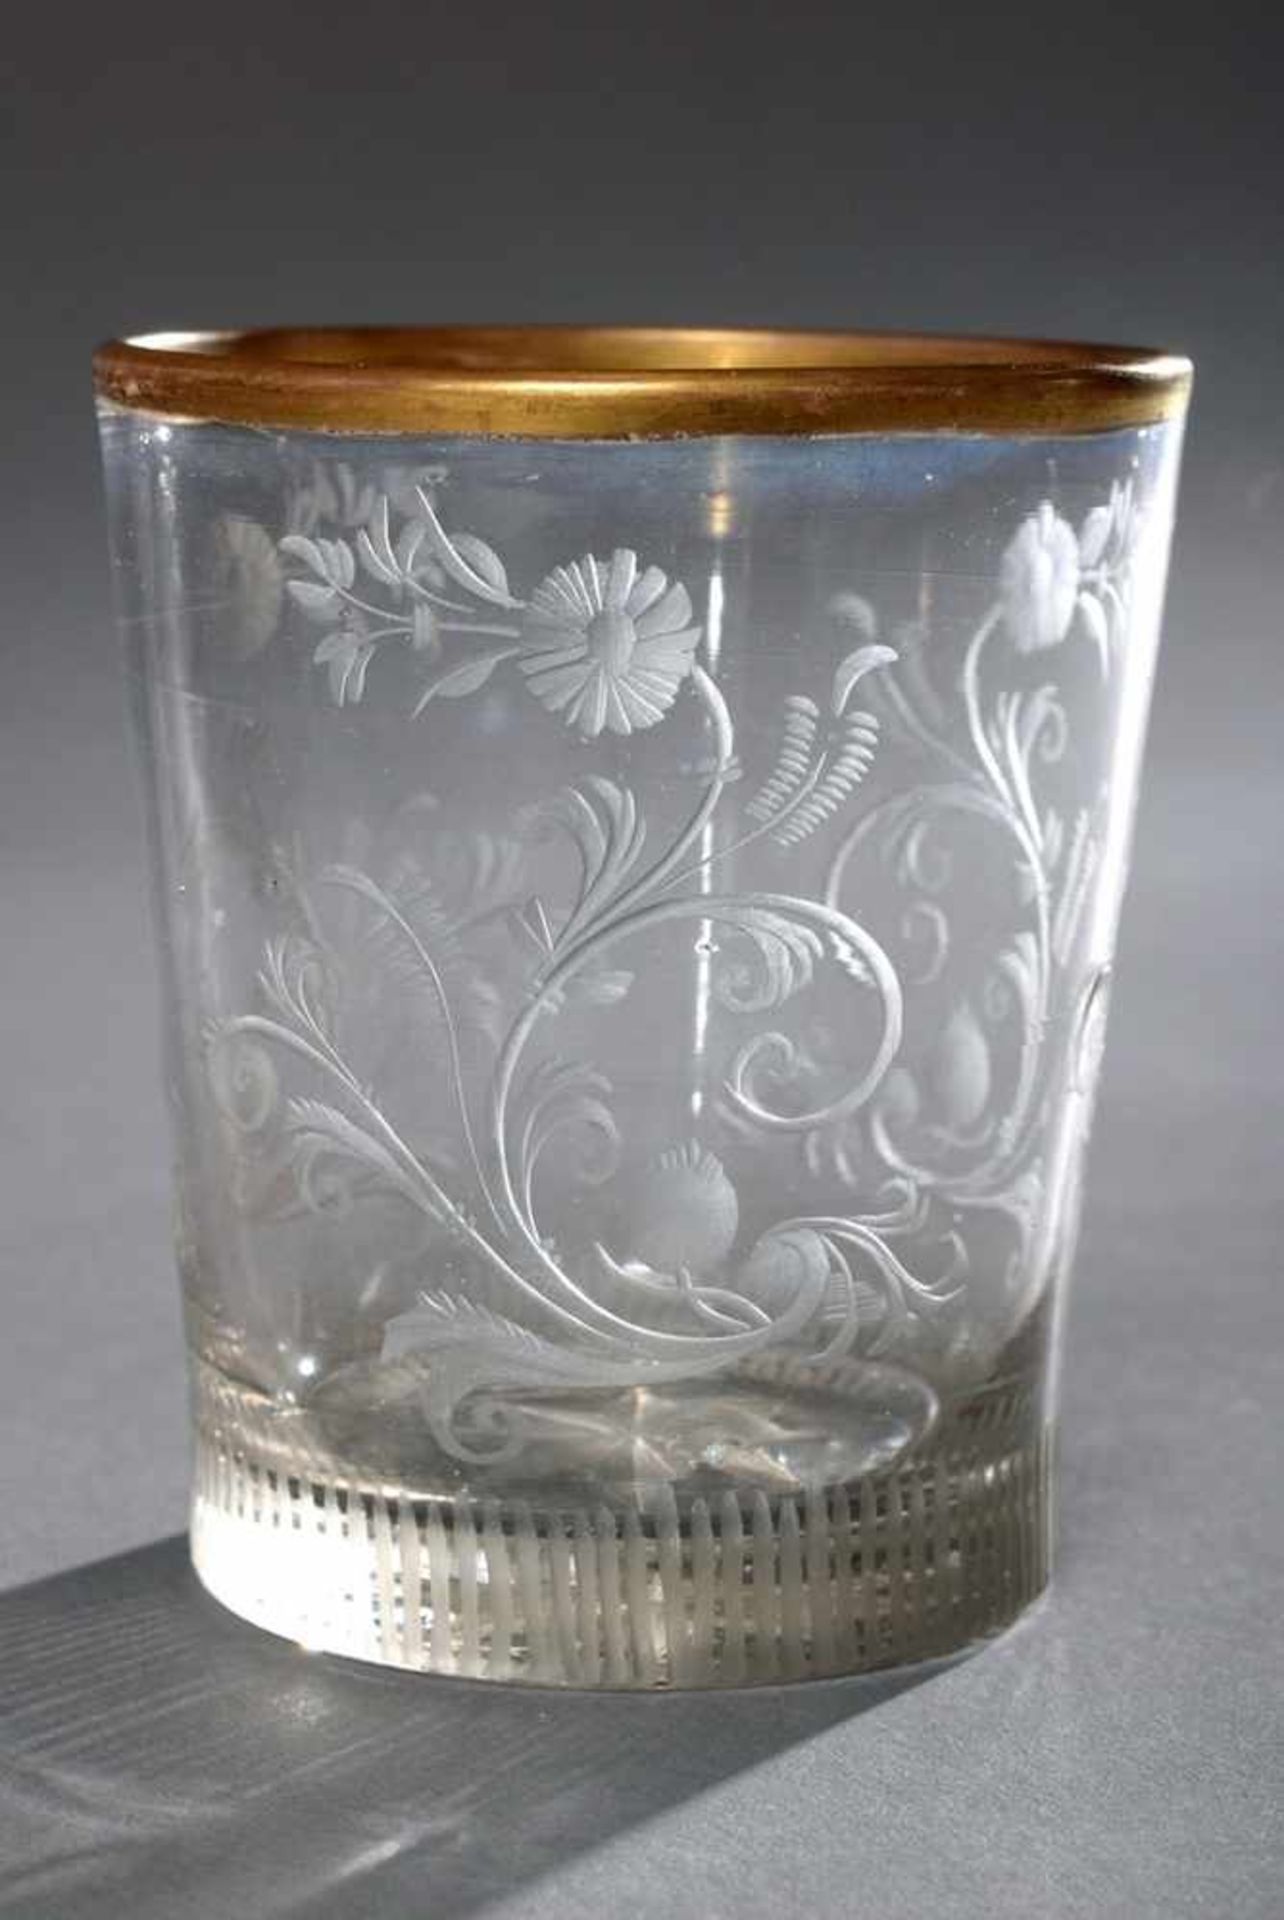 Kleiner barocker Glas Becher mit Tiefschnitt "Ranken", geschliffener Stern im Boden, H. 7cm, Gold